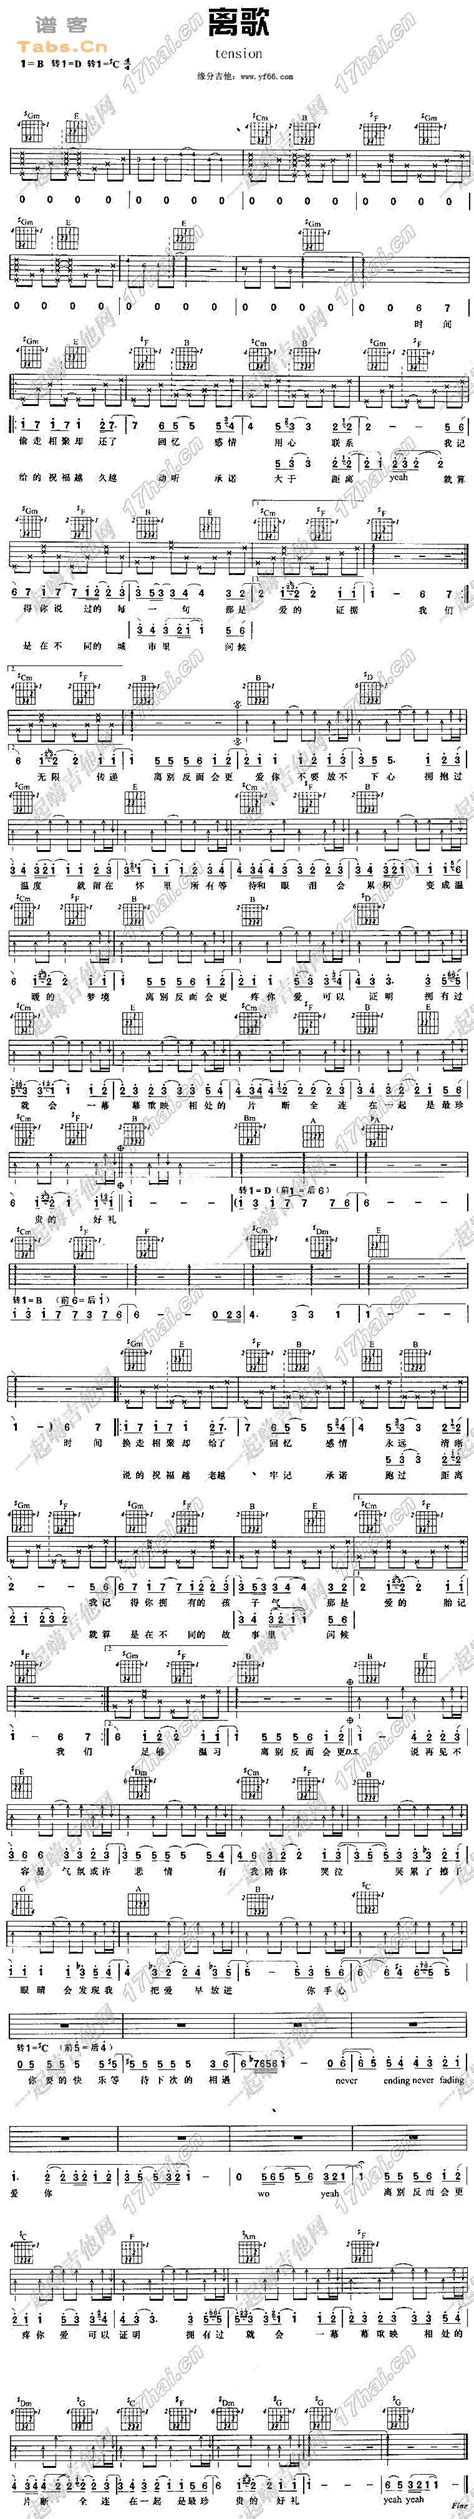 《离歌》钢琴谱 - 信乐团简单版C调和弦弹唱伴奏无旋律 - 加歌词 - 钢琴简谱